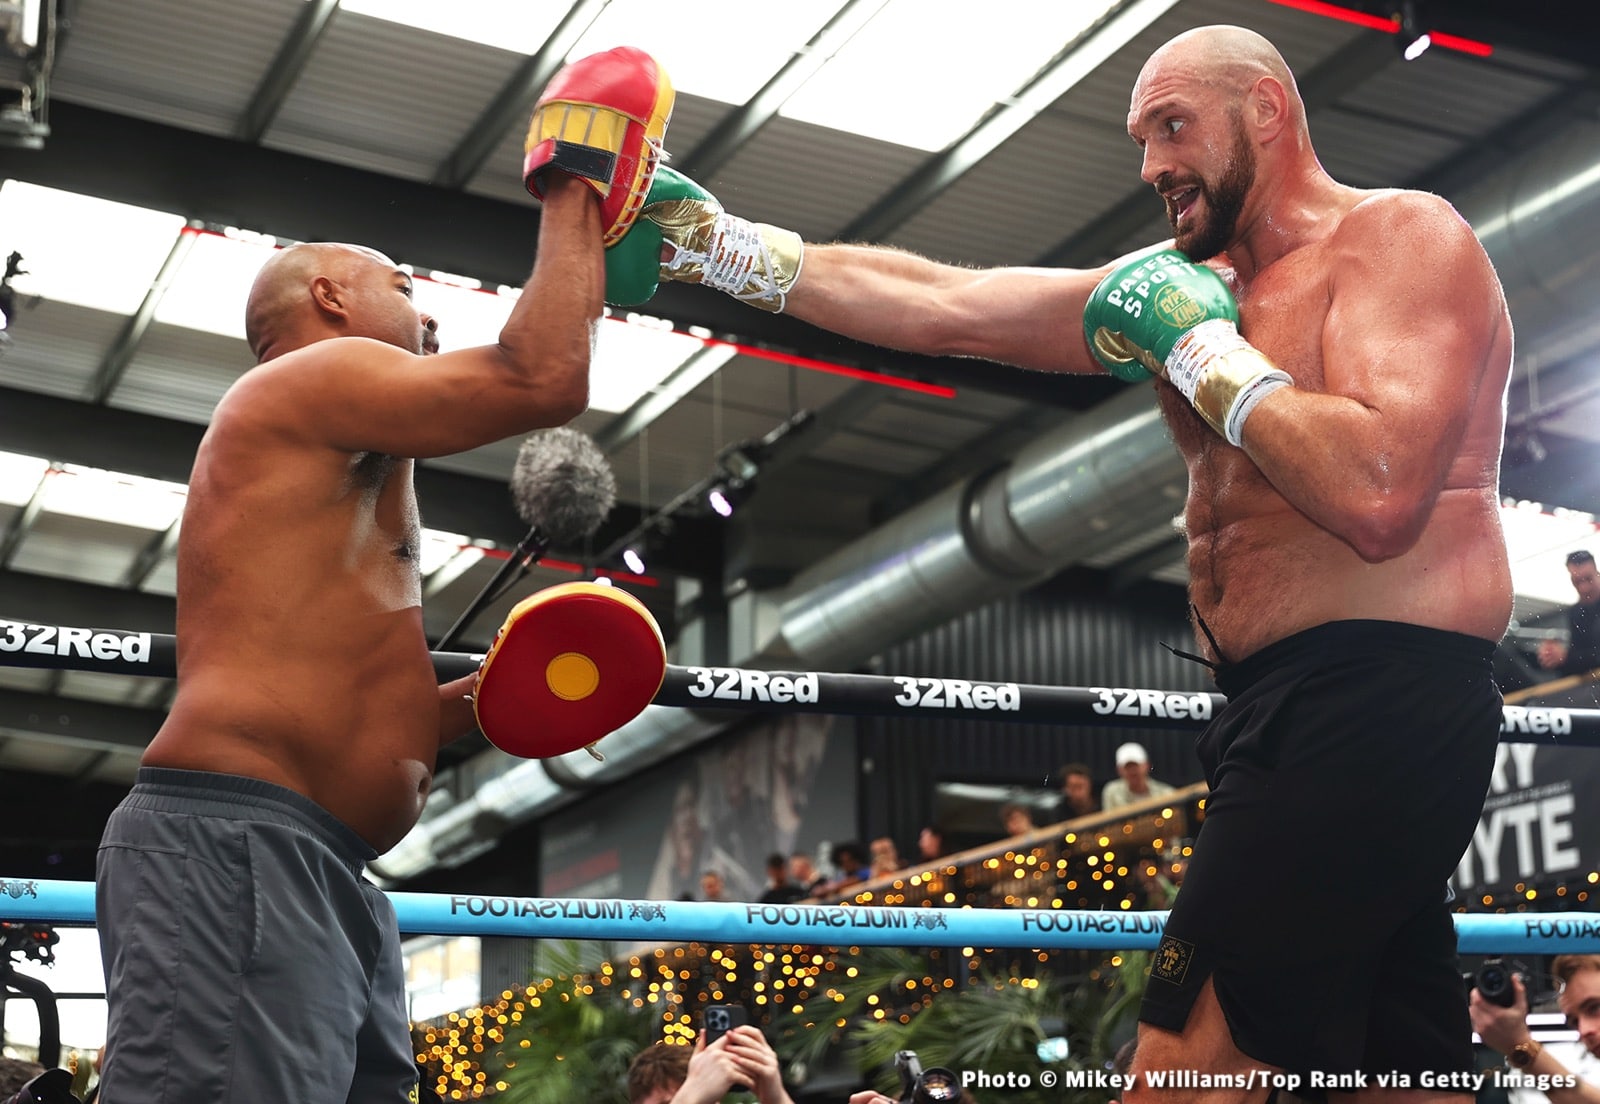 Tyson Fury boxing image / photo